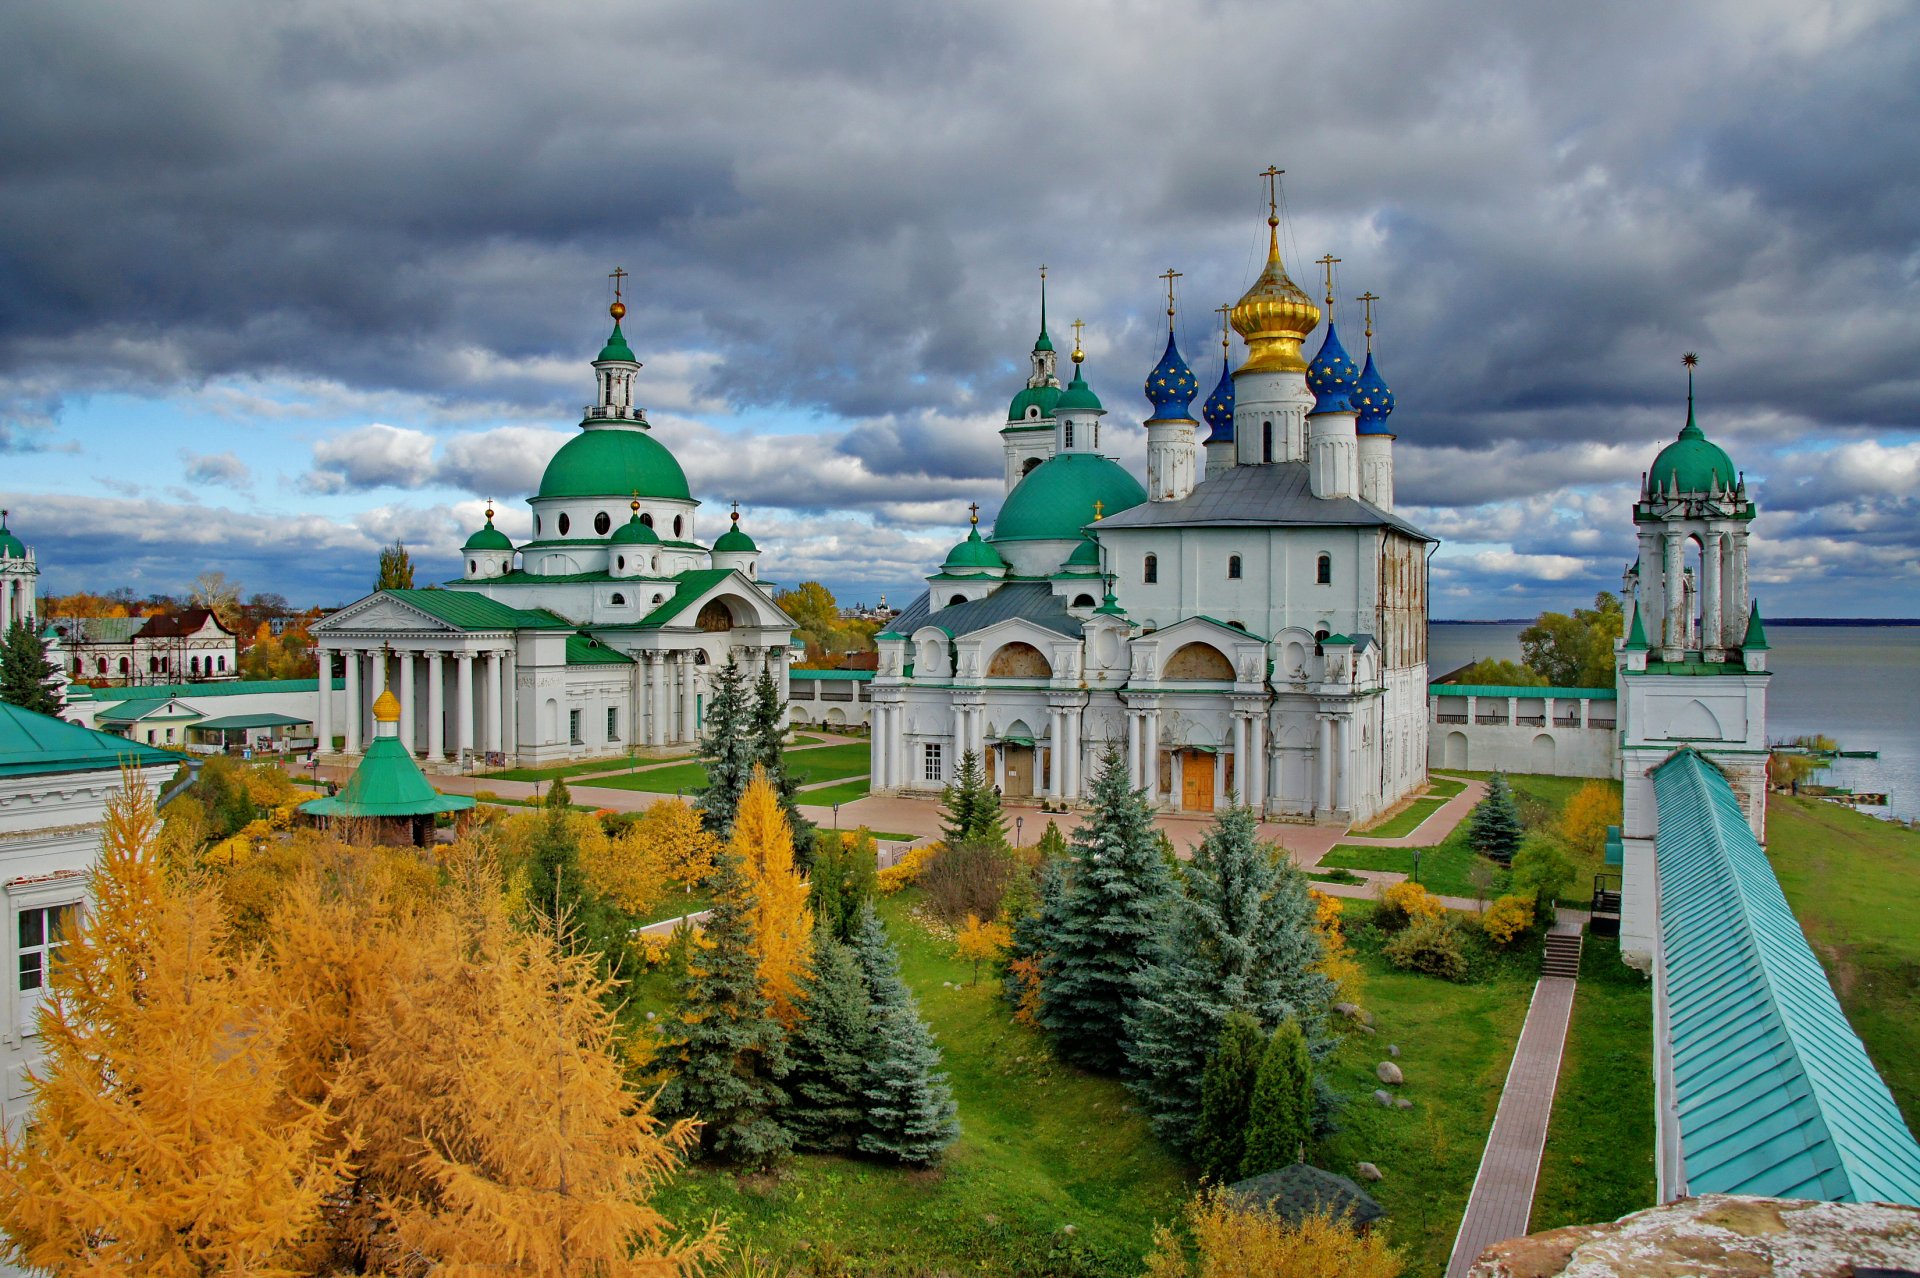 фото церкви россии самый красивый